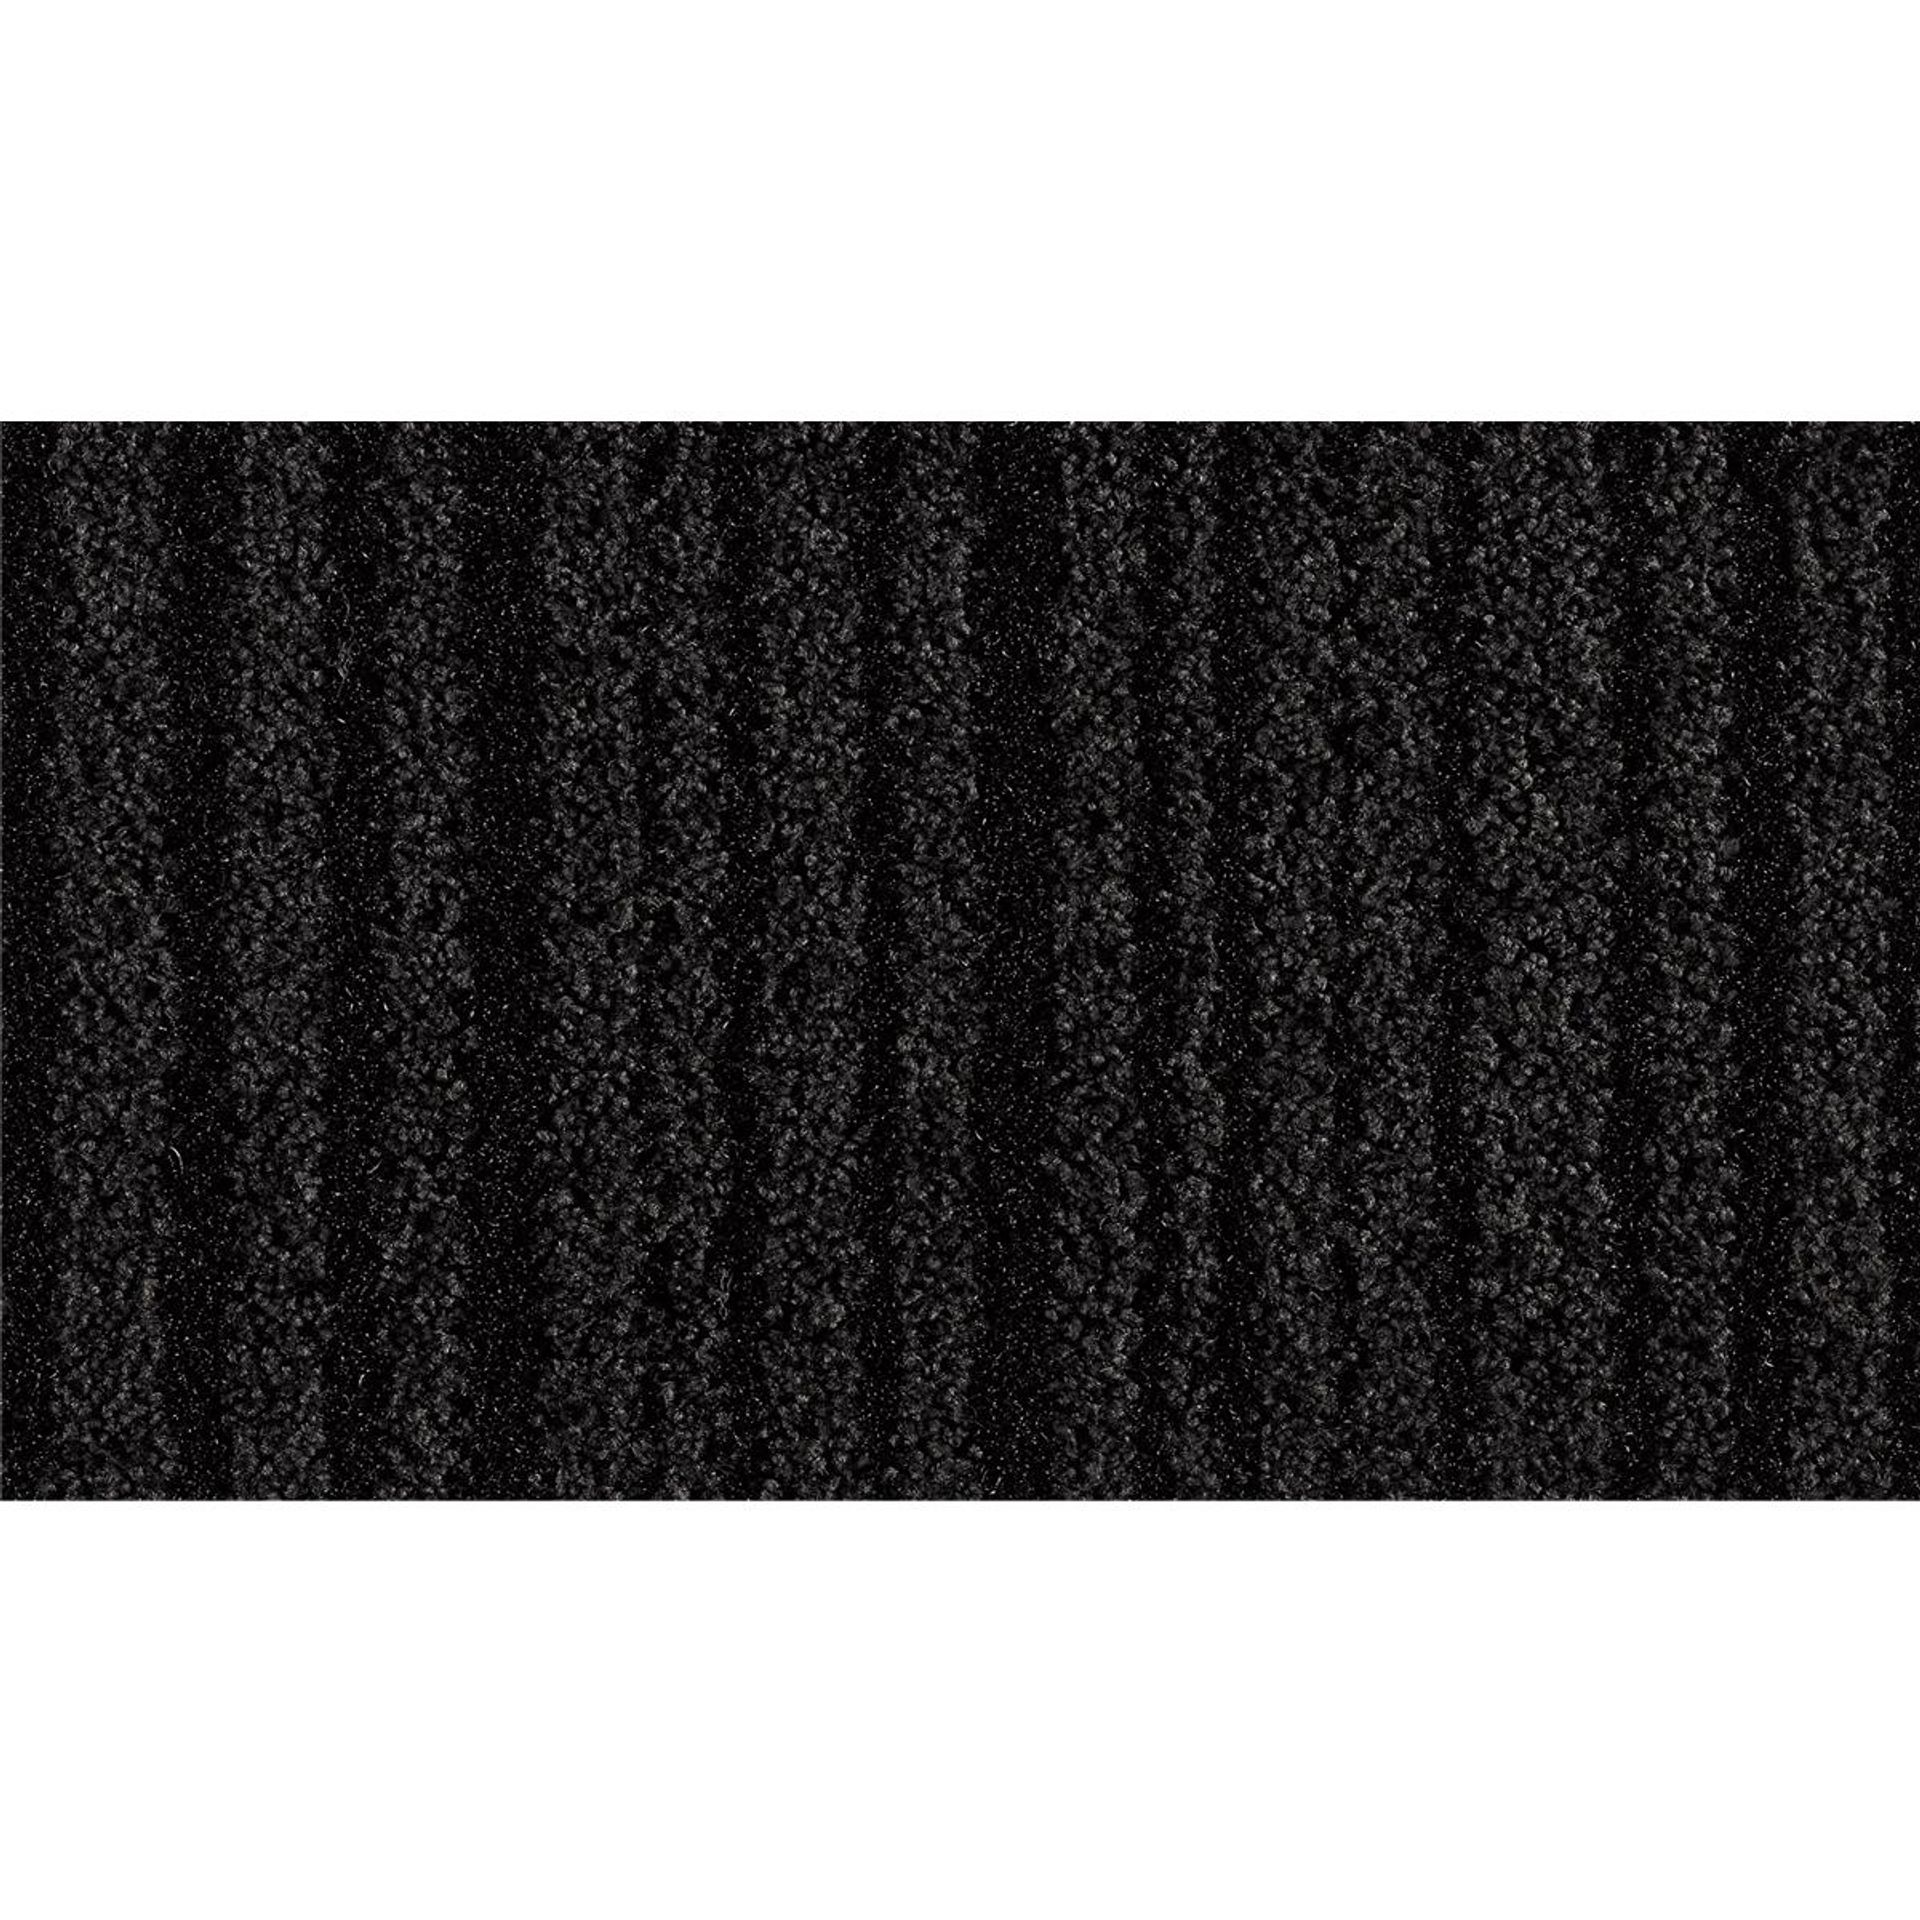 Sauberlauf Schwarz 40.11 mit Rand - Rollenbreite 200 cm